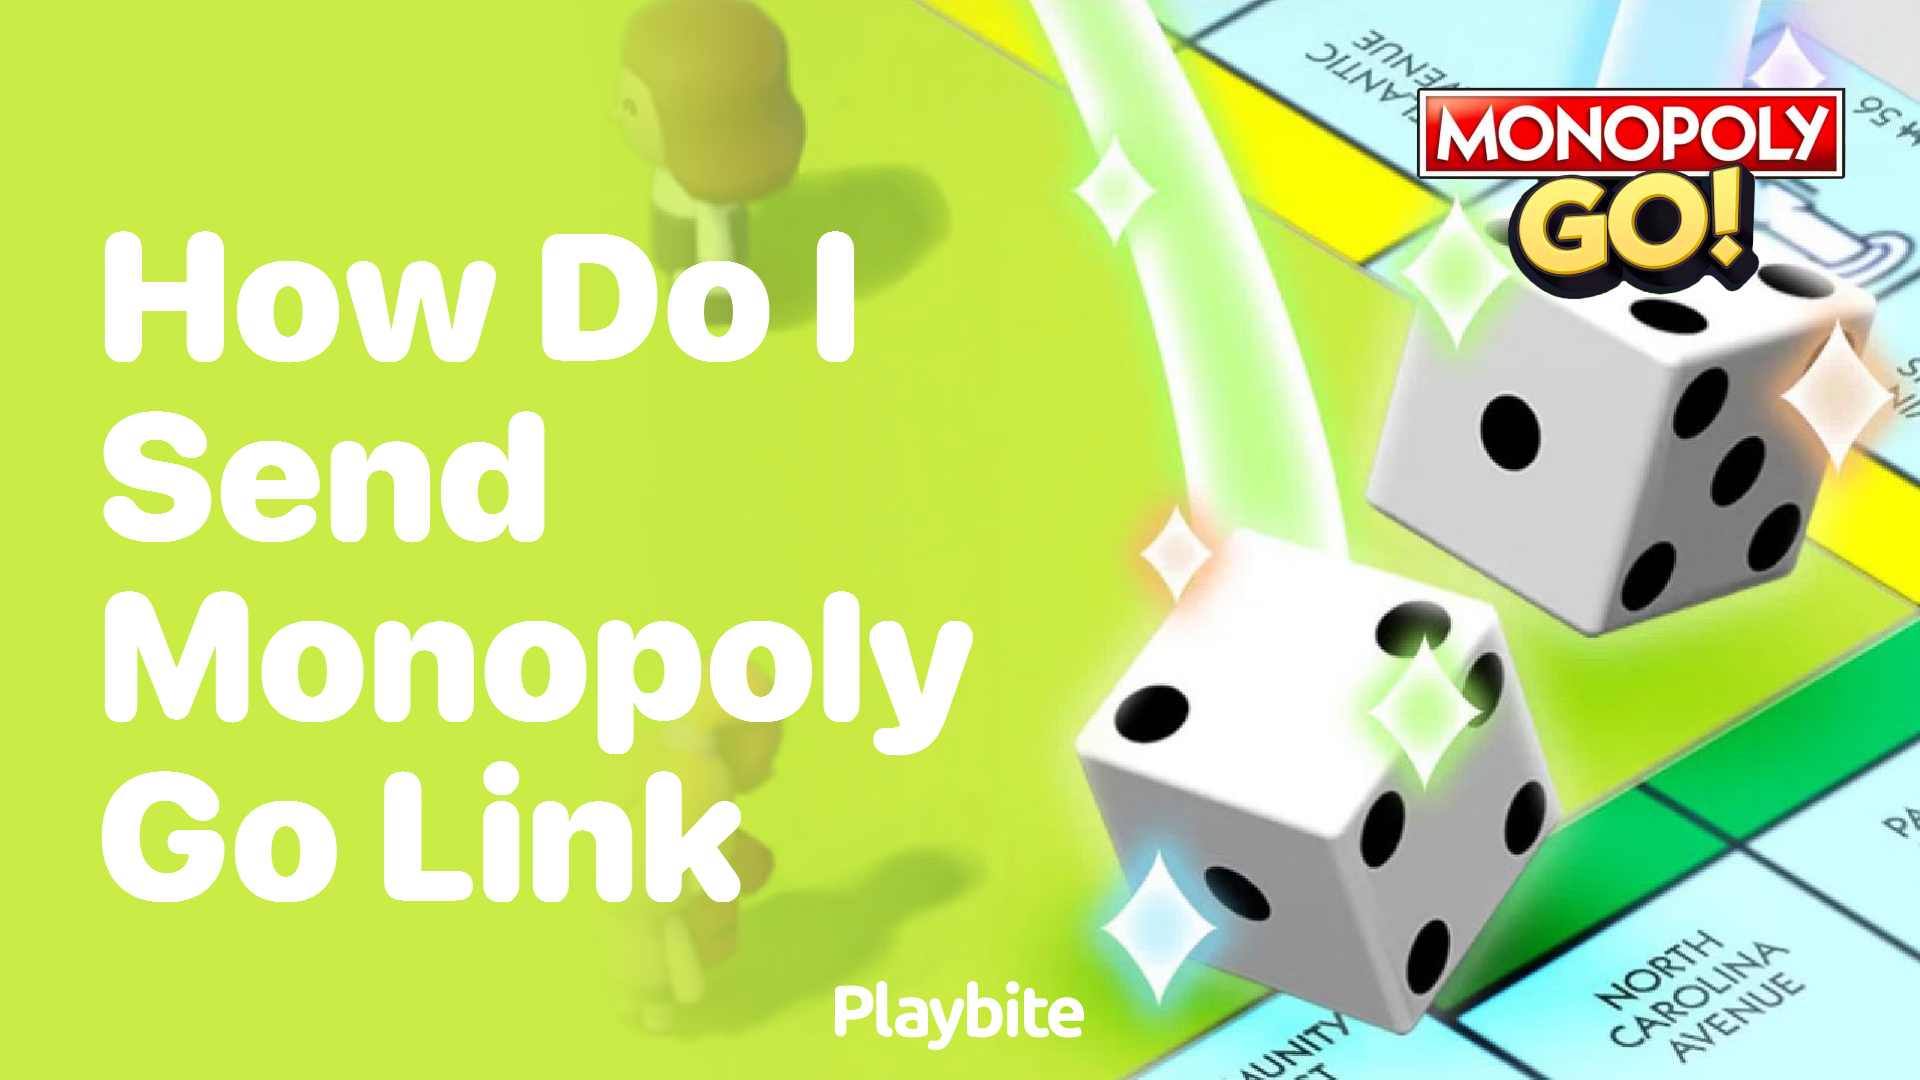 How Do I Send a Monopoly Go Link?